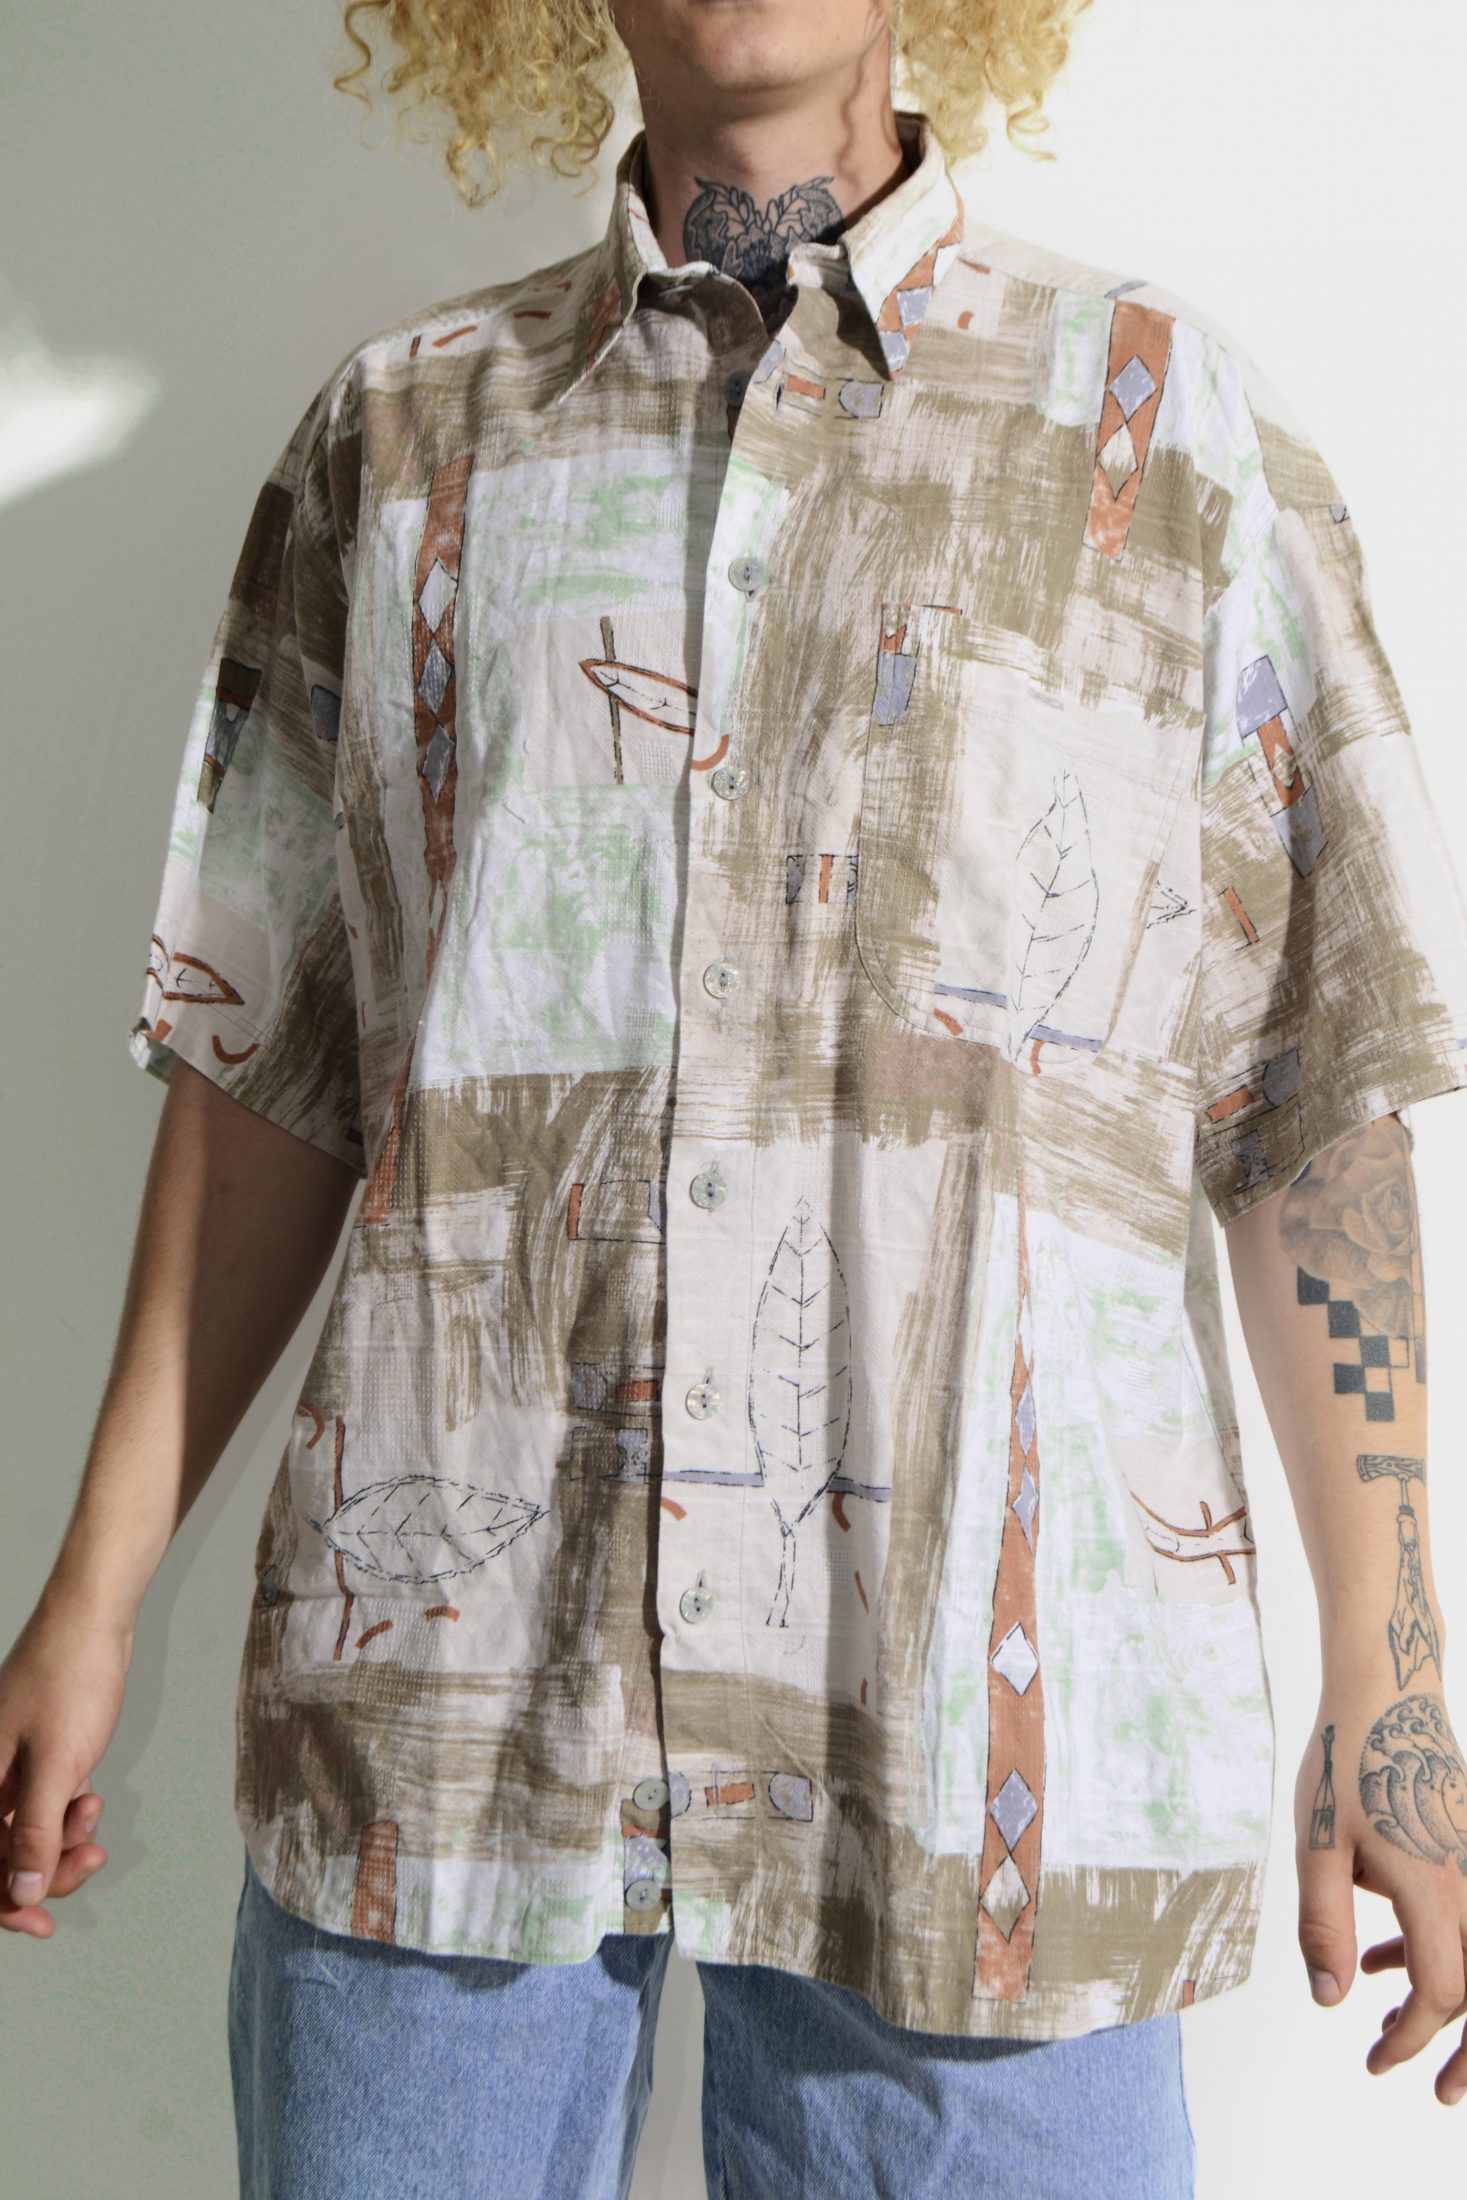 Retro pastel print shirt men | Vintage clothes online for men